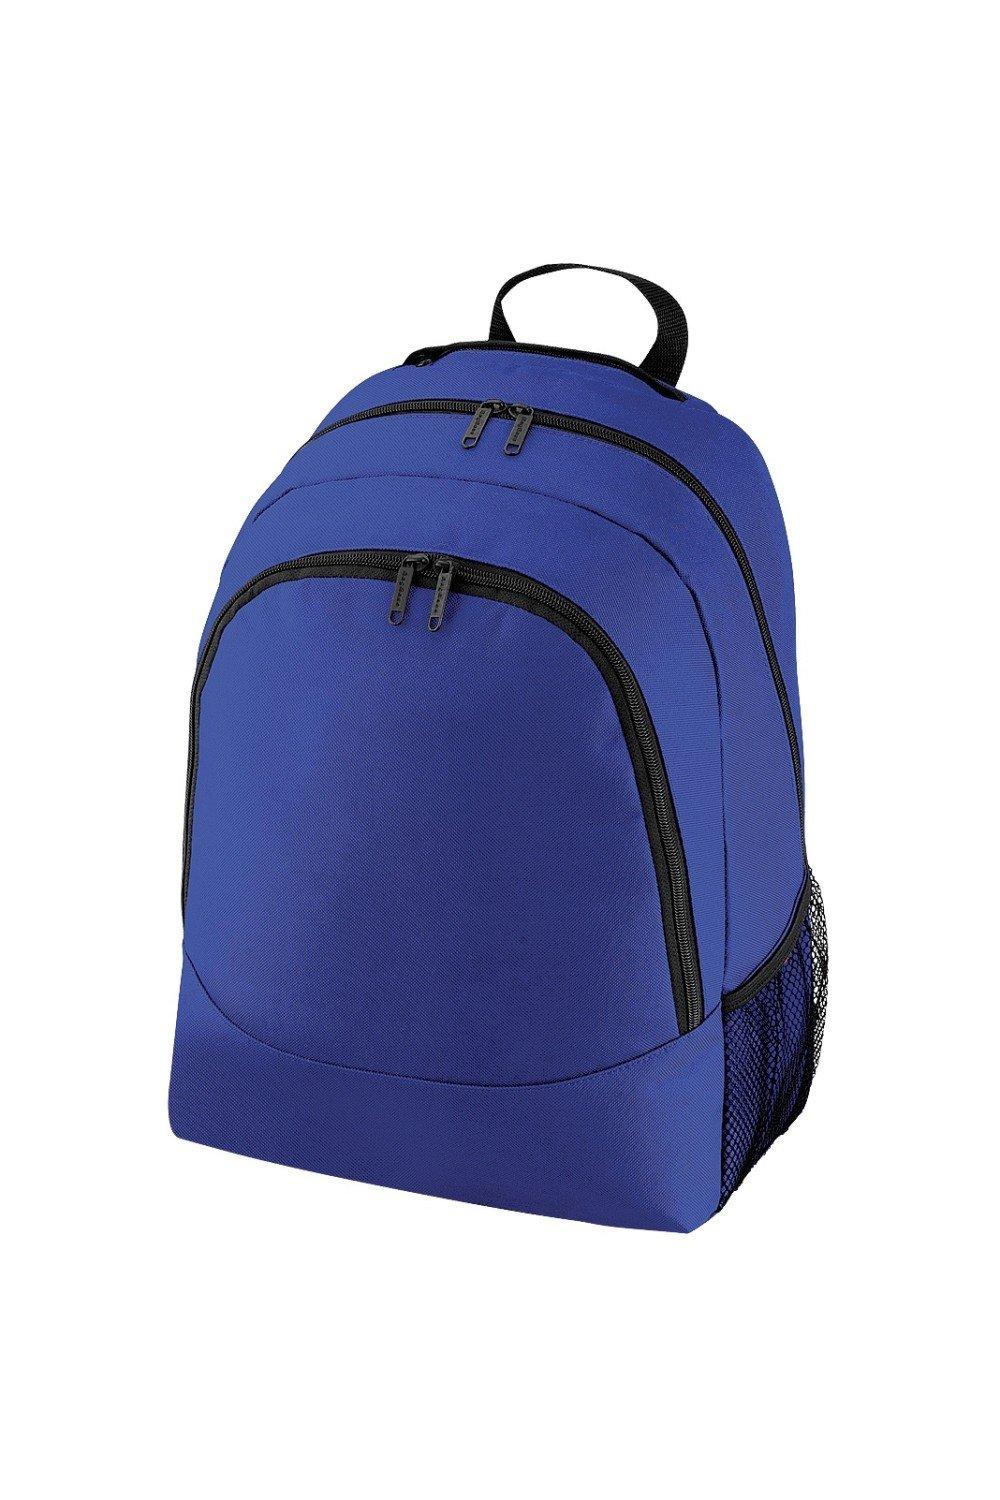 Универсальный многоцелевой рюкзак/рюкзак/сумка (18 литров) Bagbase, синий чехол задняя панель накладка бампер mypads mp3 для huawei honor 6 plus pe ul00 tl20 tl10 cl00 75 7 противоударный